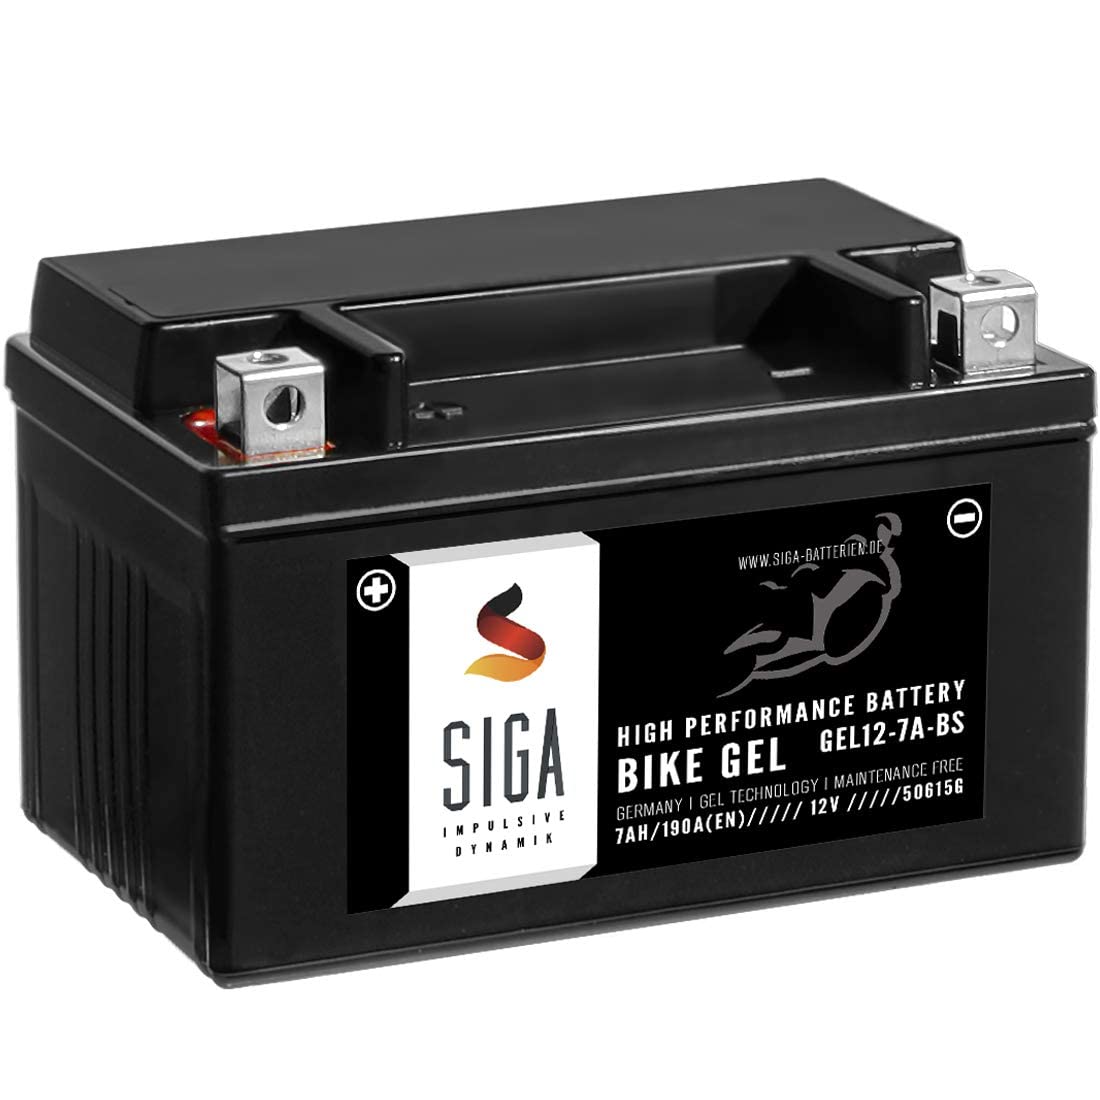 SIGA GEL Motorradbatterie 12V 7Ah 190A/EN Gel Batterie YTX7A-BS Gel12-7A-BS YTX7A-4 CTX7A-BS GTX7A-BS 50615LF